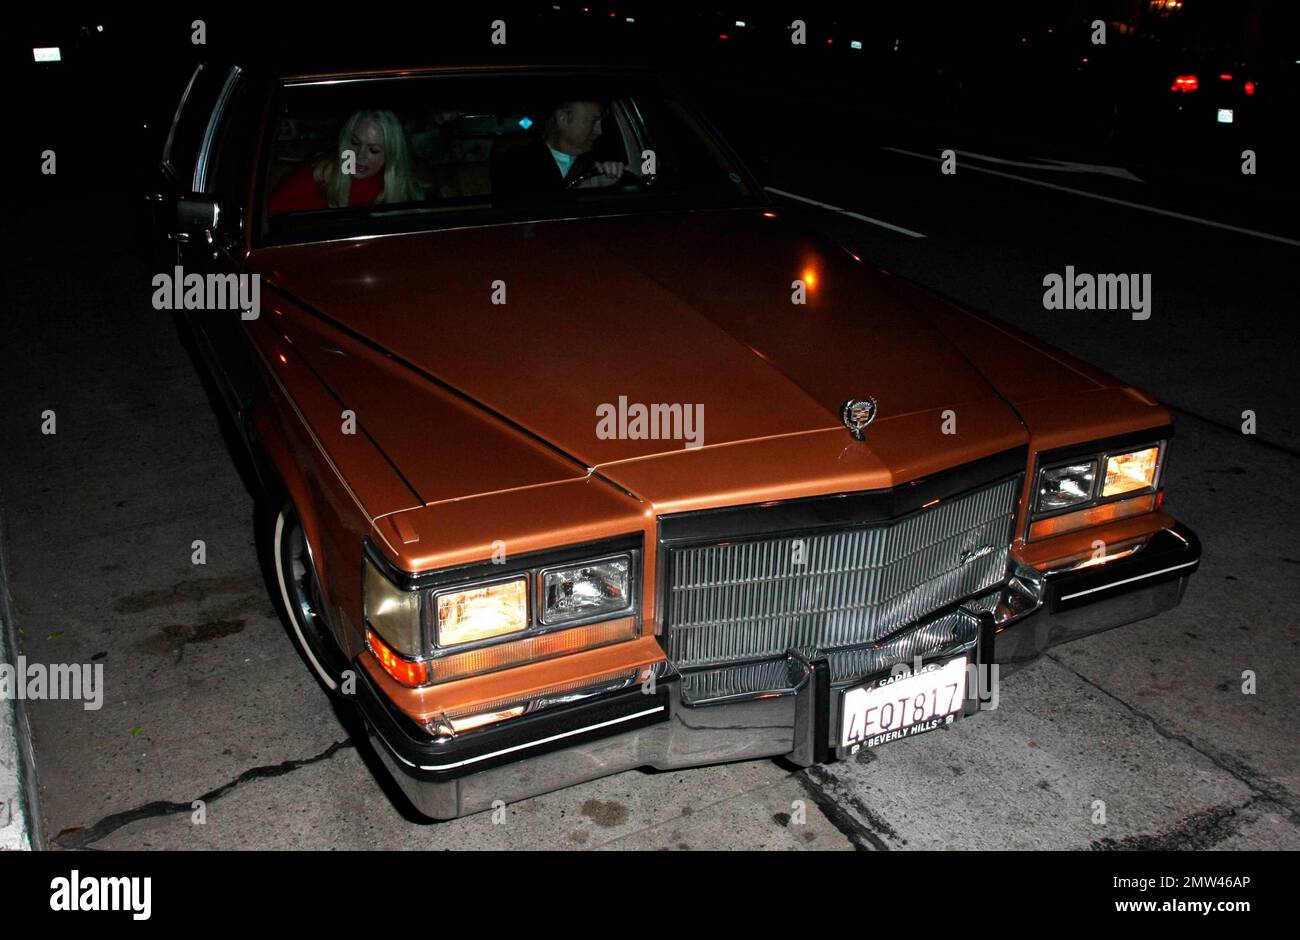 Yasmin Khan, fille de l'actrice Rita Hayworth, s'éloigne du restaurant Madeo dans une Cadillac brune possédée par sa mère. Los Angeles, Californie. 2/10/10. Banque D'Images